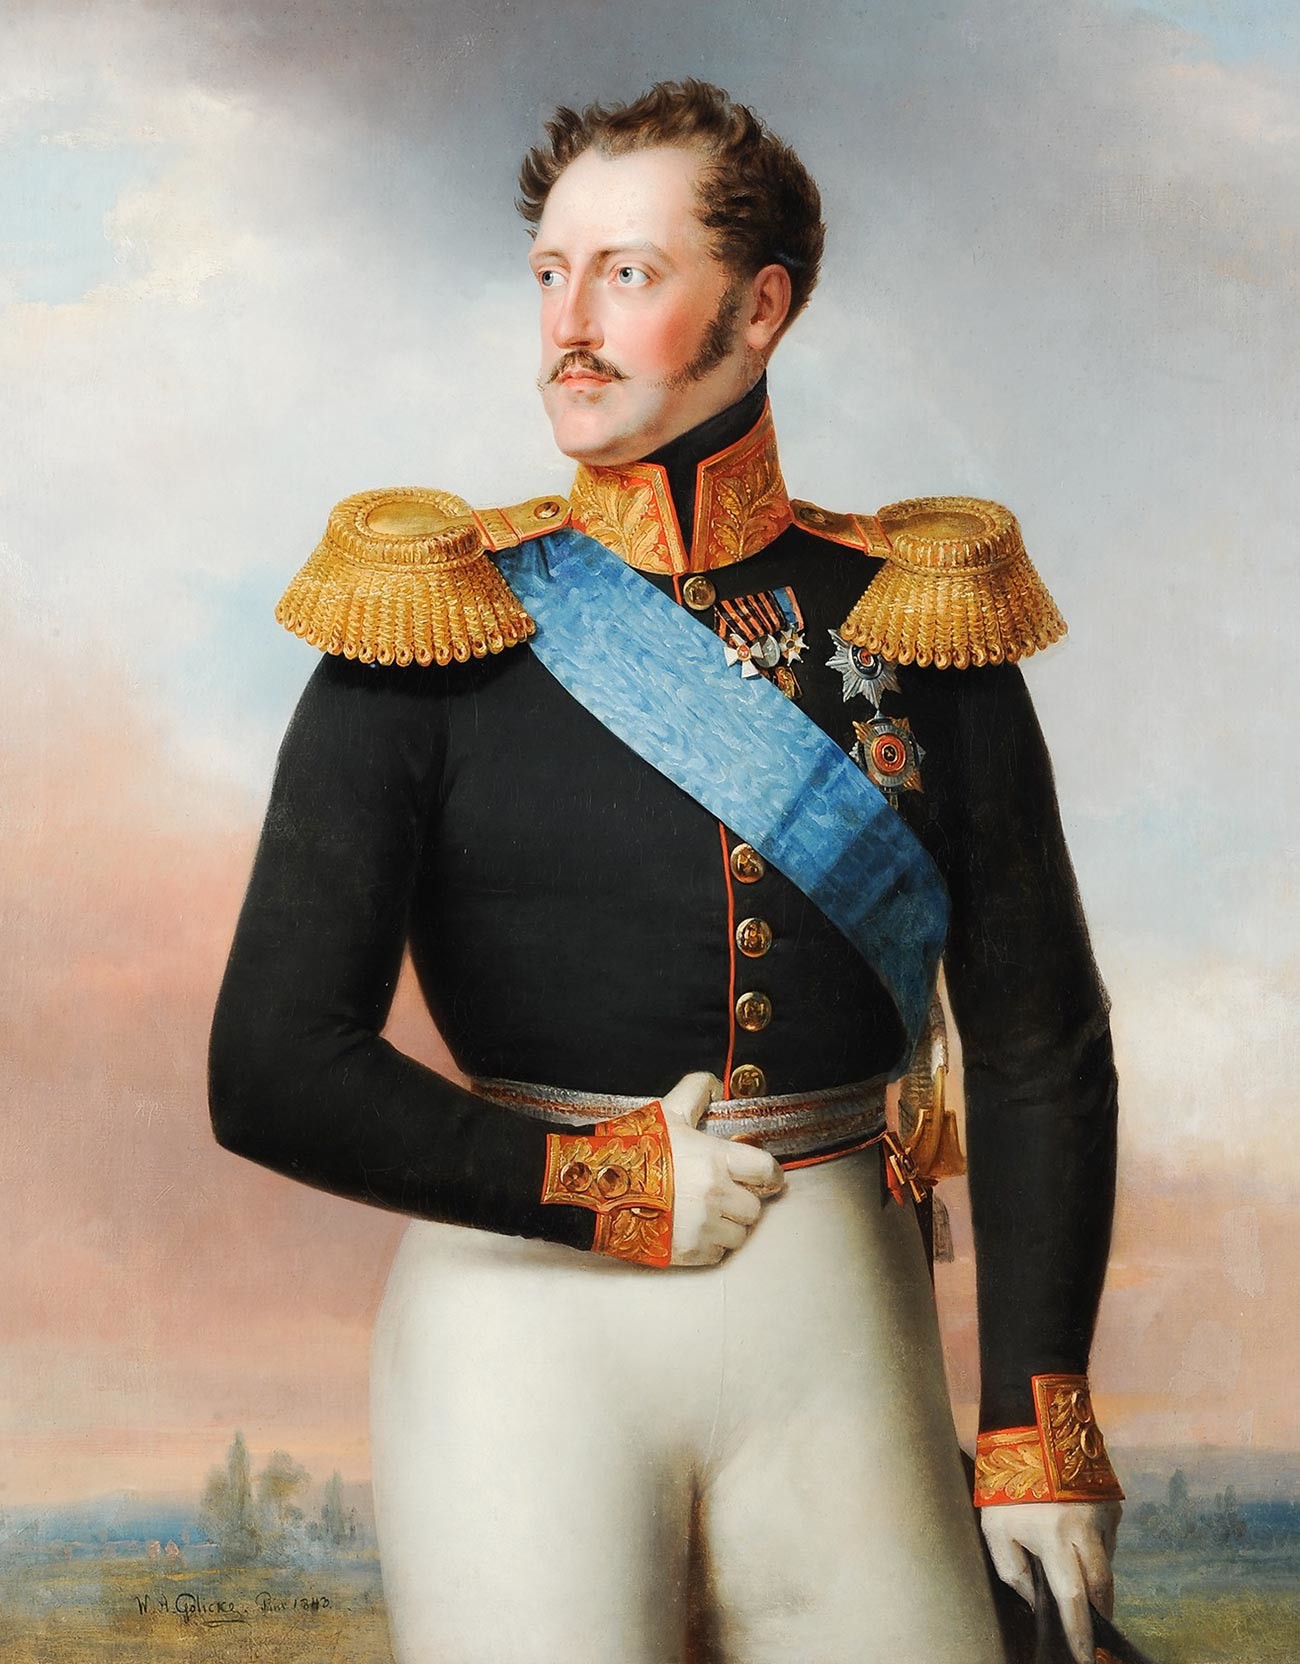 Nicola I, 1843
